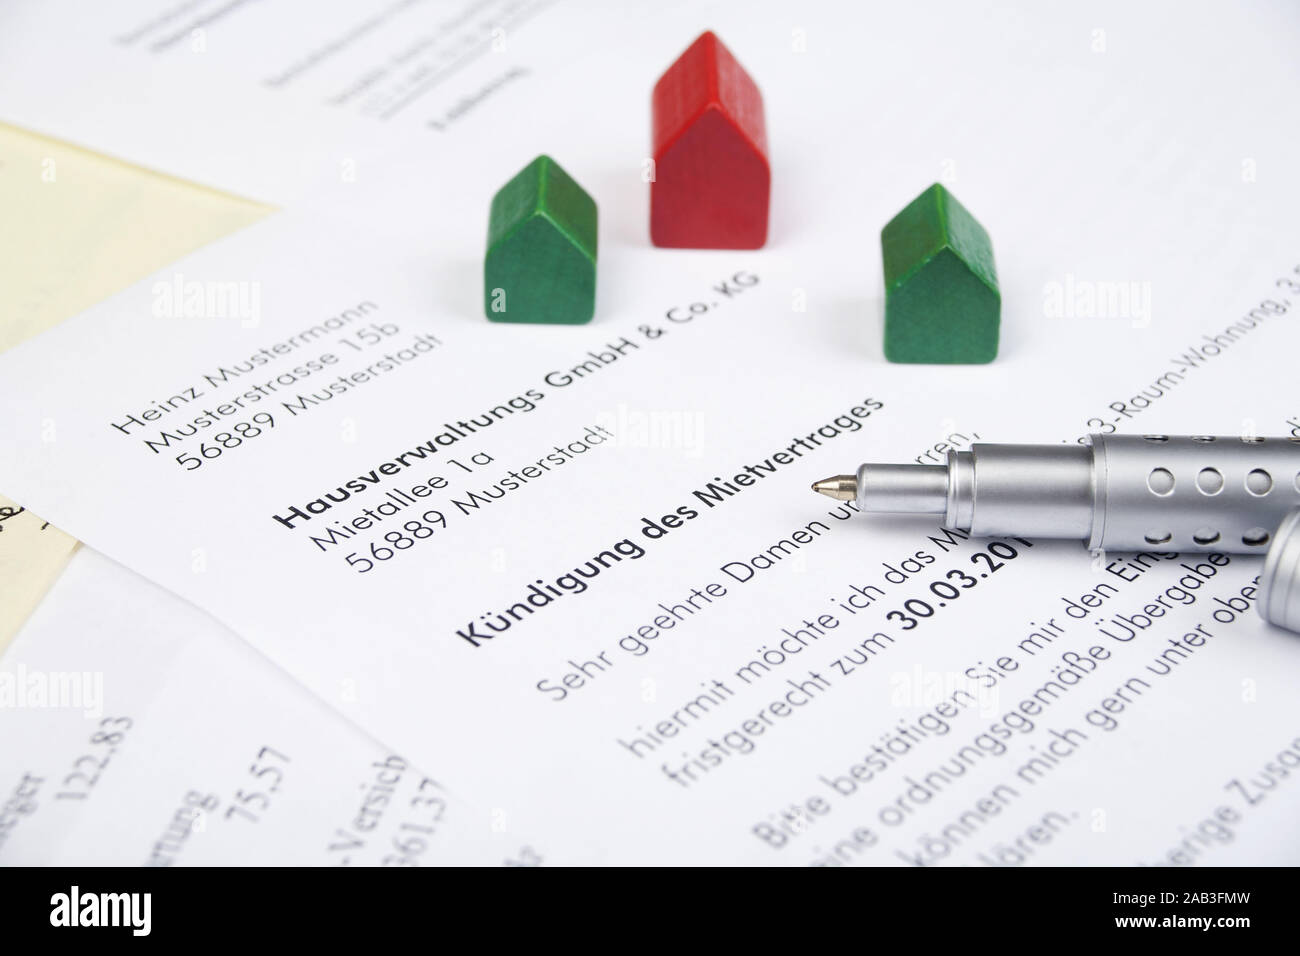 Schriftliche Kuendigung eines Mietvertrages |Written notice of termination of a lease| Stock Photo